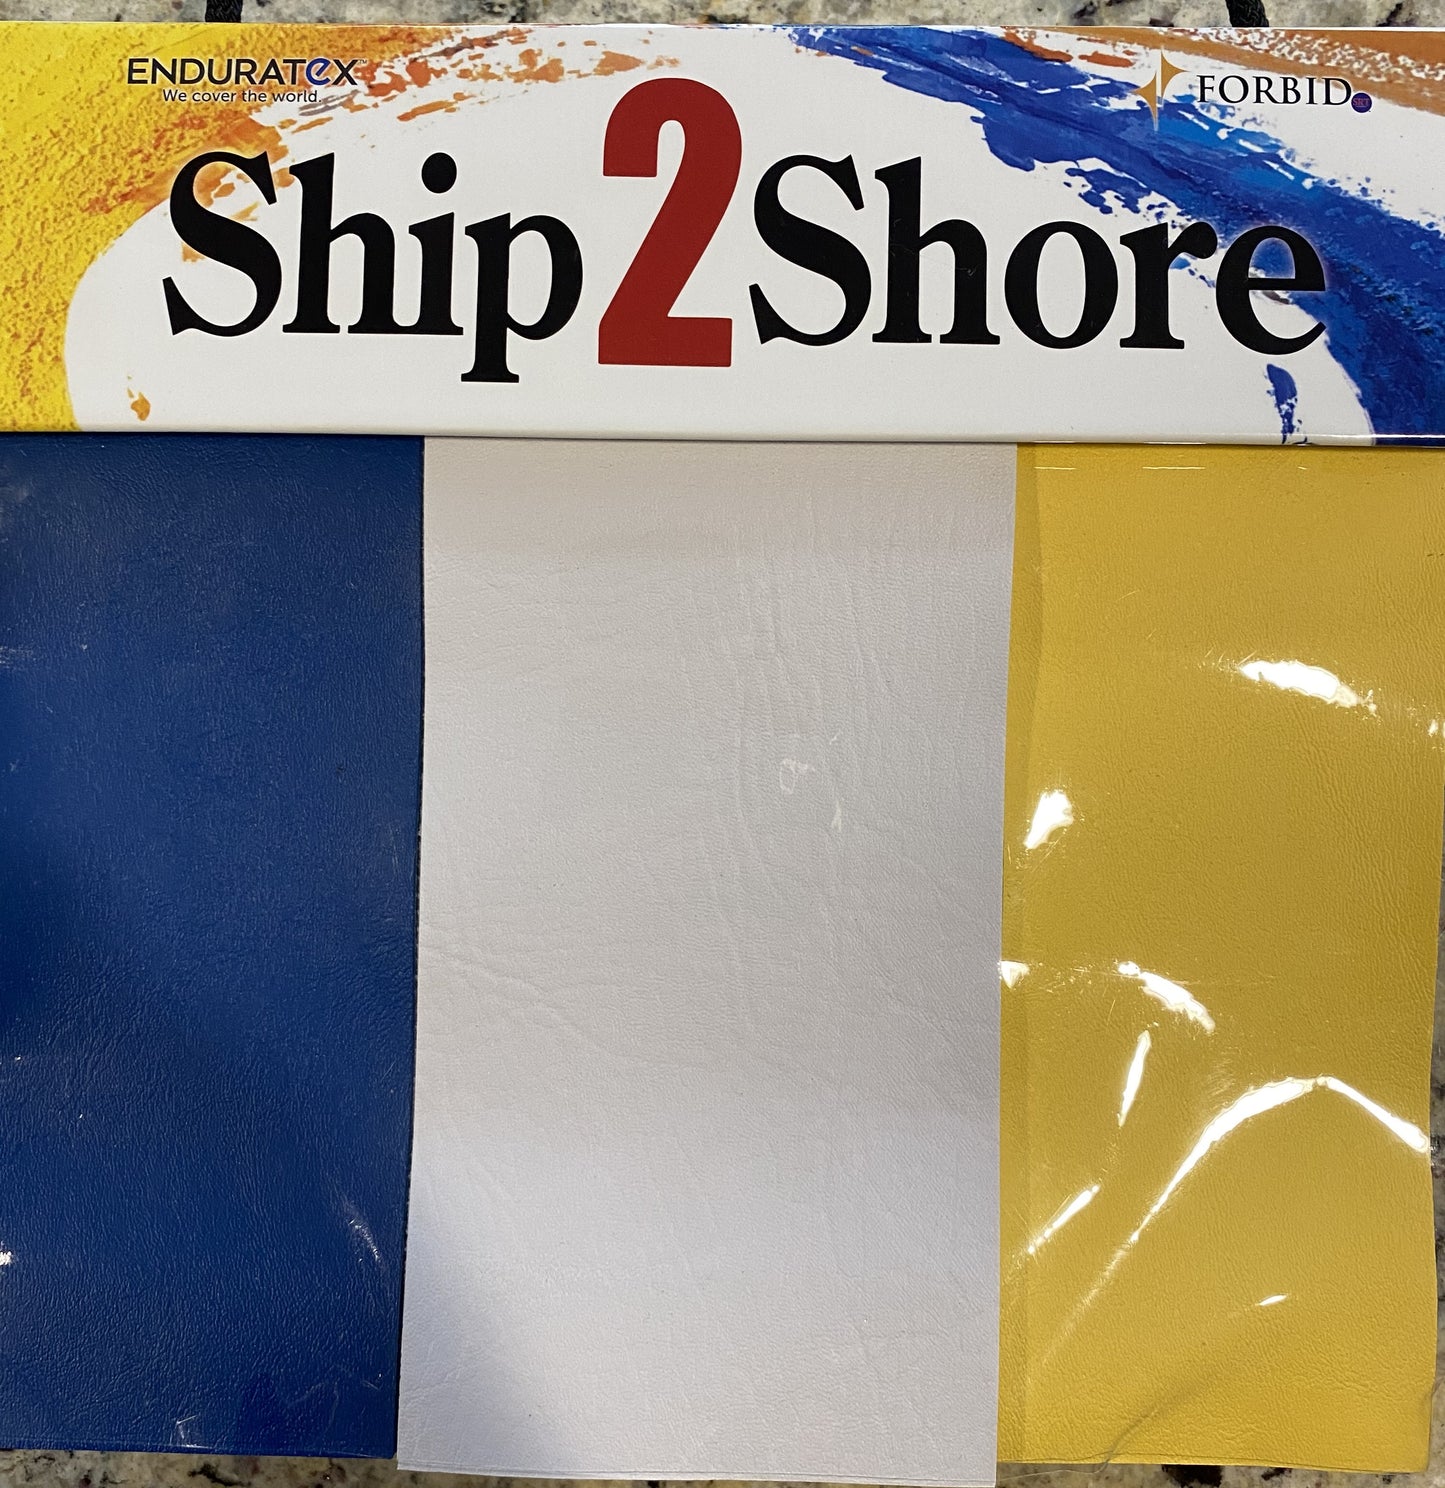 Enduratex Ship 2 Shore Sample Book